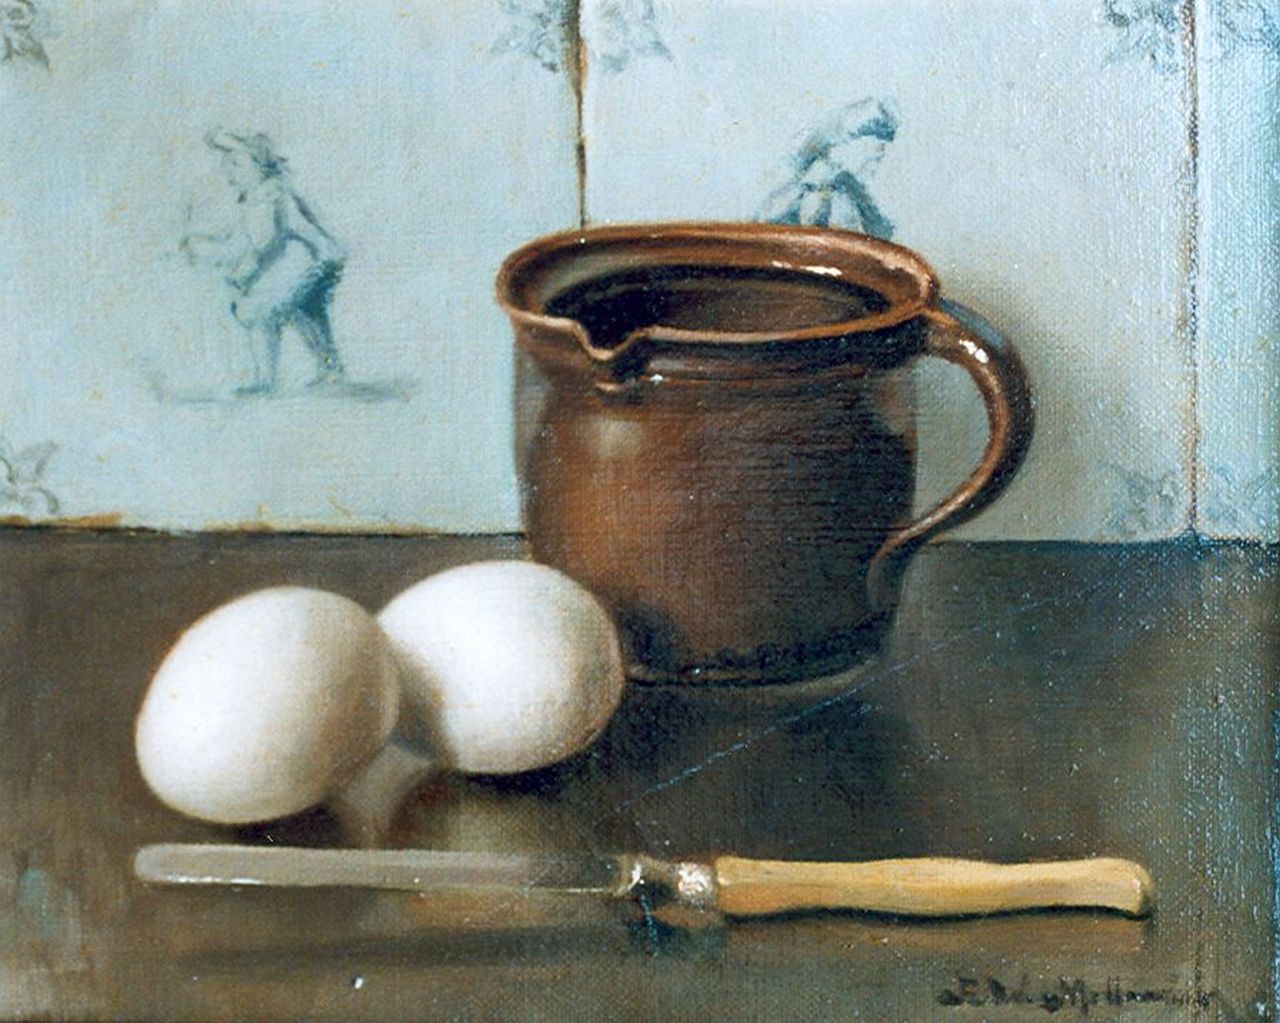 Millenaar P.W.  | Pieter Wilhelm Millenaar, Twee eieren, een kom en een mes voor een tegelwand, olieverf op doek 20,2 x 25,2 cm, gesigneerd rechtsonder